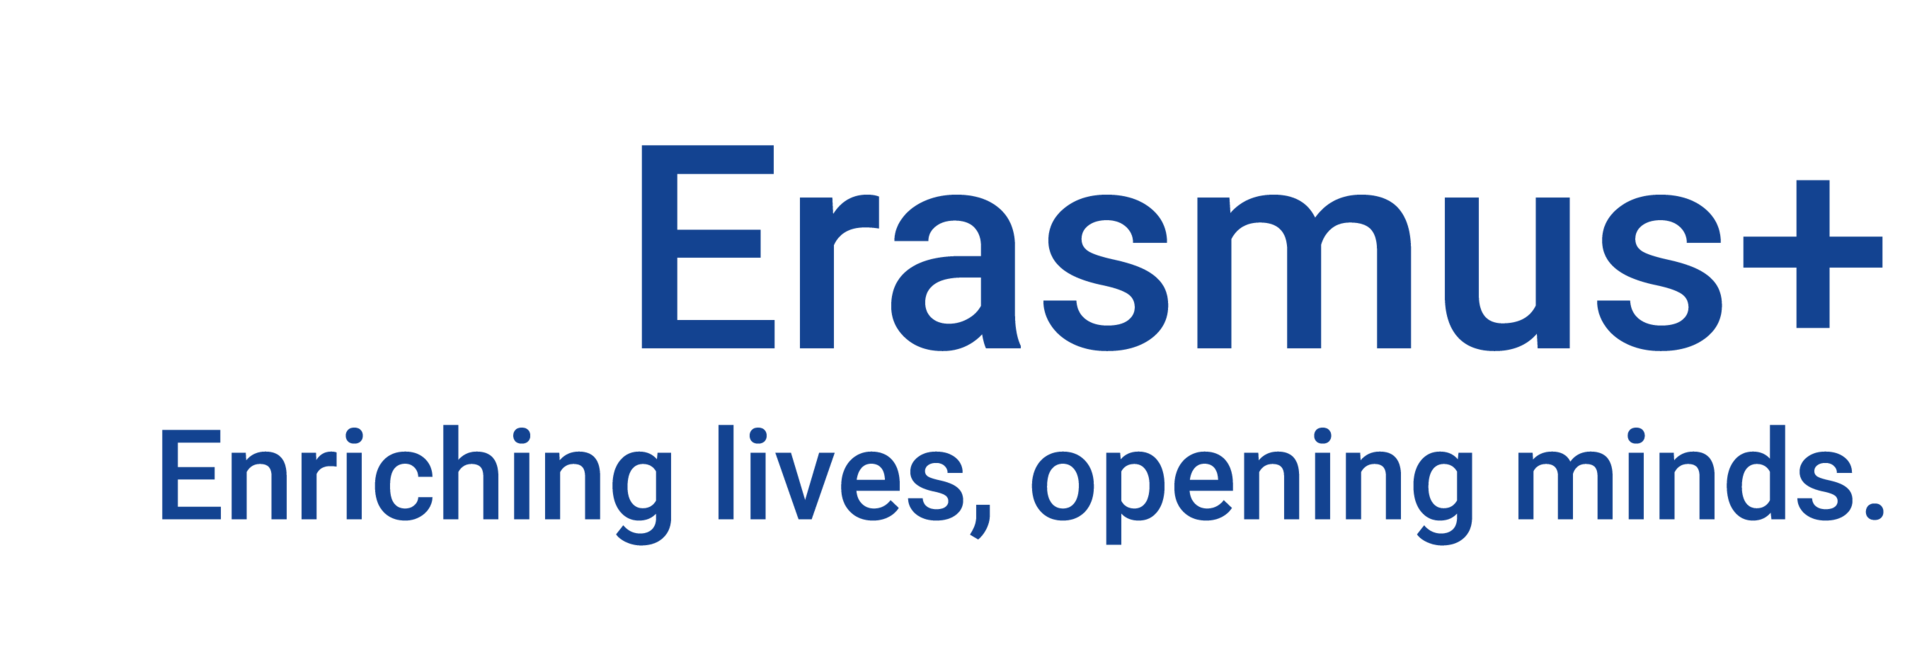 Logo Erasmus+  Enriching lives, opening minds.